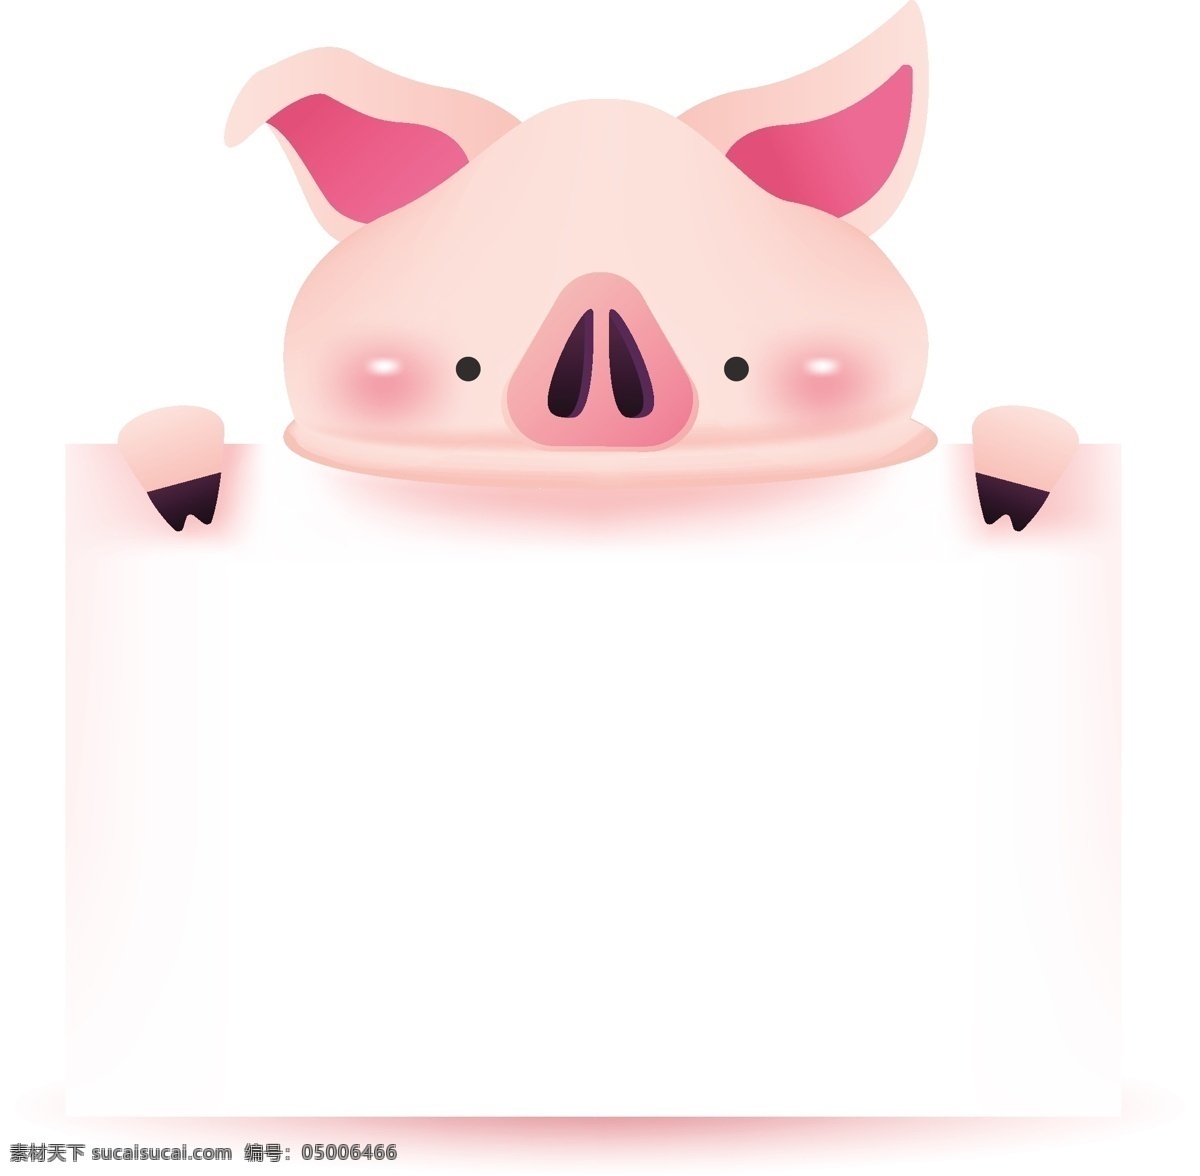 可爱小猪 猪年 看书的小猪 卡通小猪 小猪读书 猪爸爸 猪妈妈 猪宝宝 猪猪形象 猪年吉祥物 猪猪侠 圣诞小猪 新年小猪 小猪漫画 卡通设计